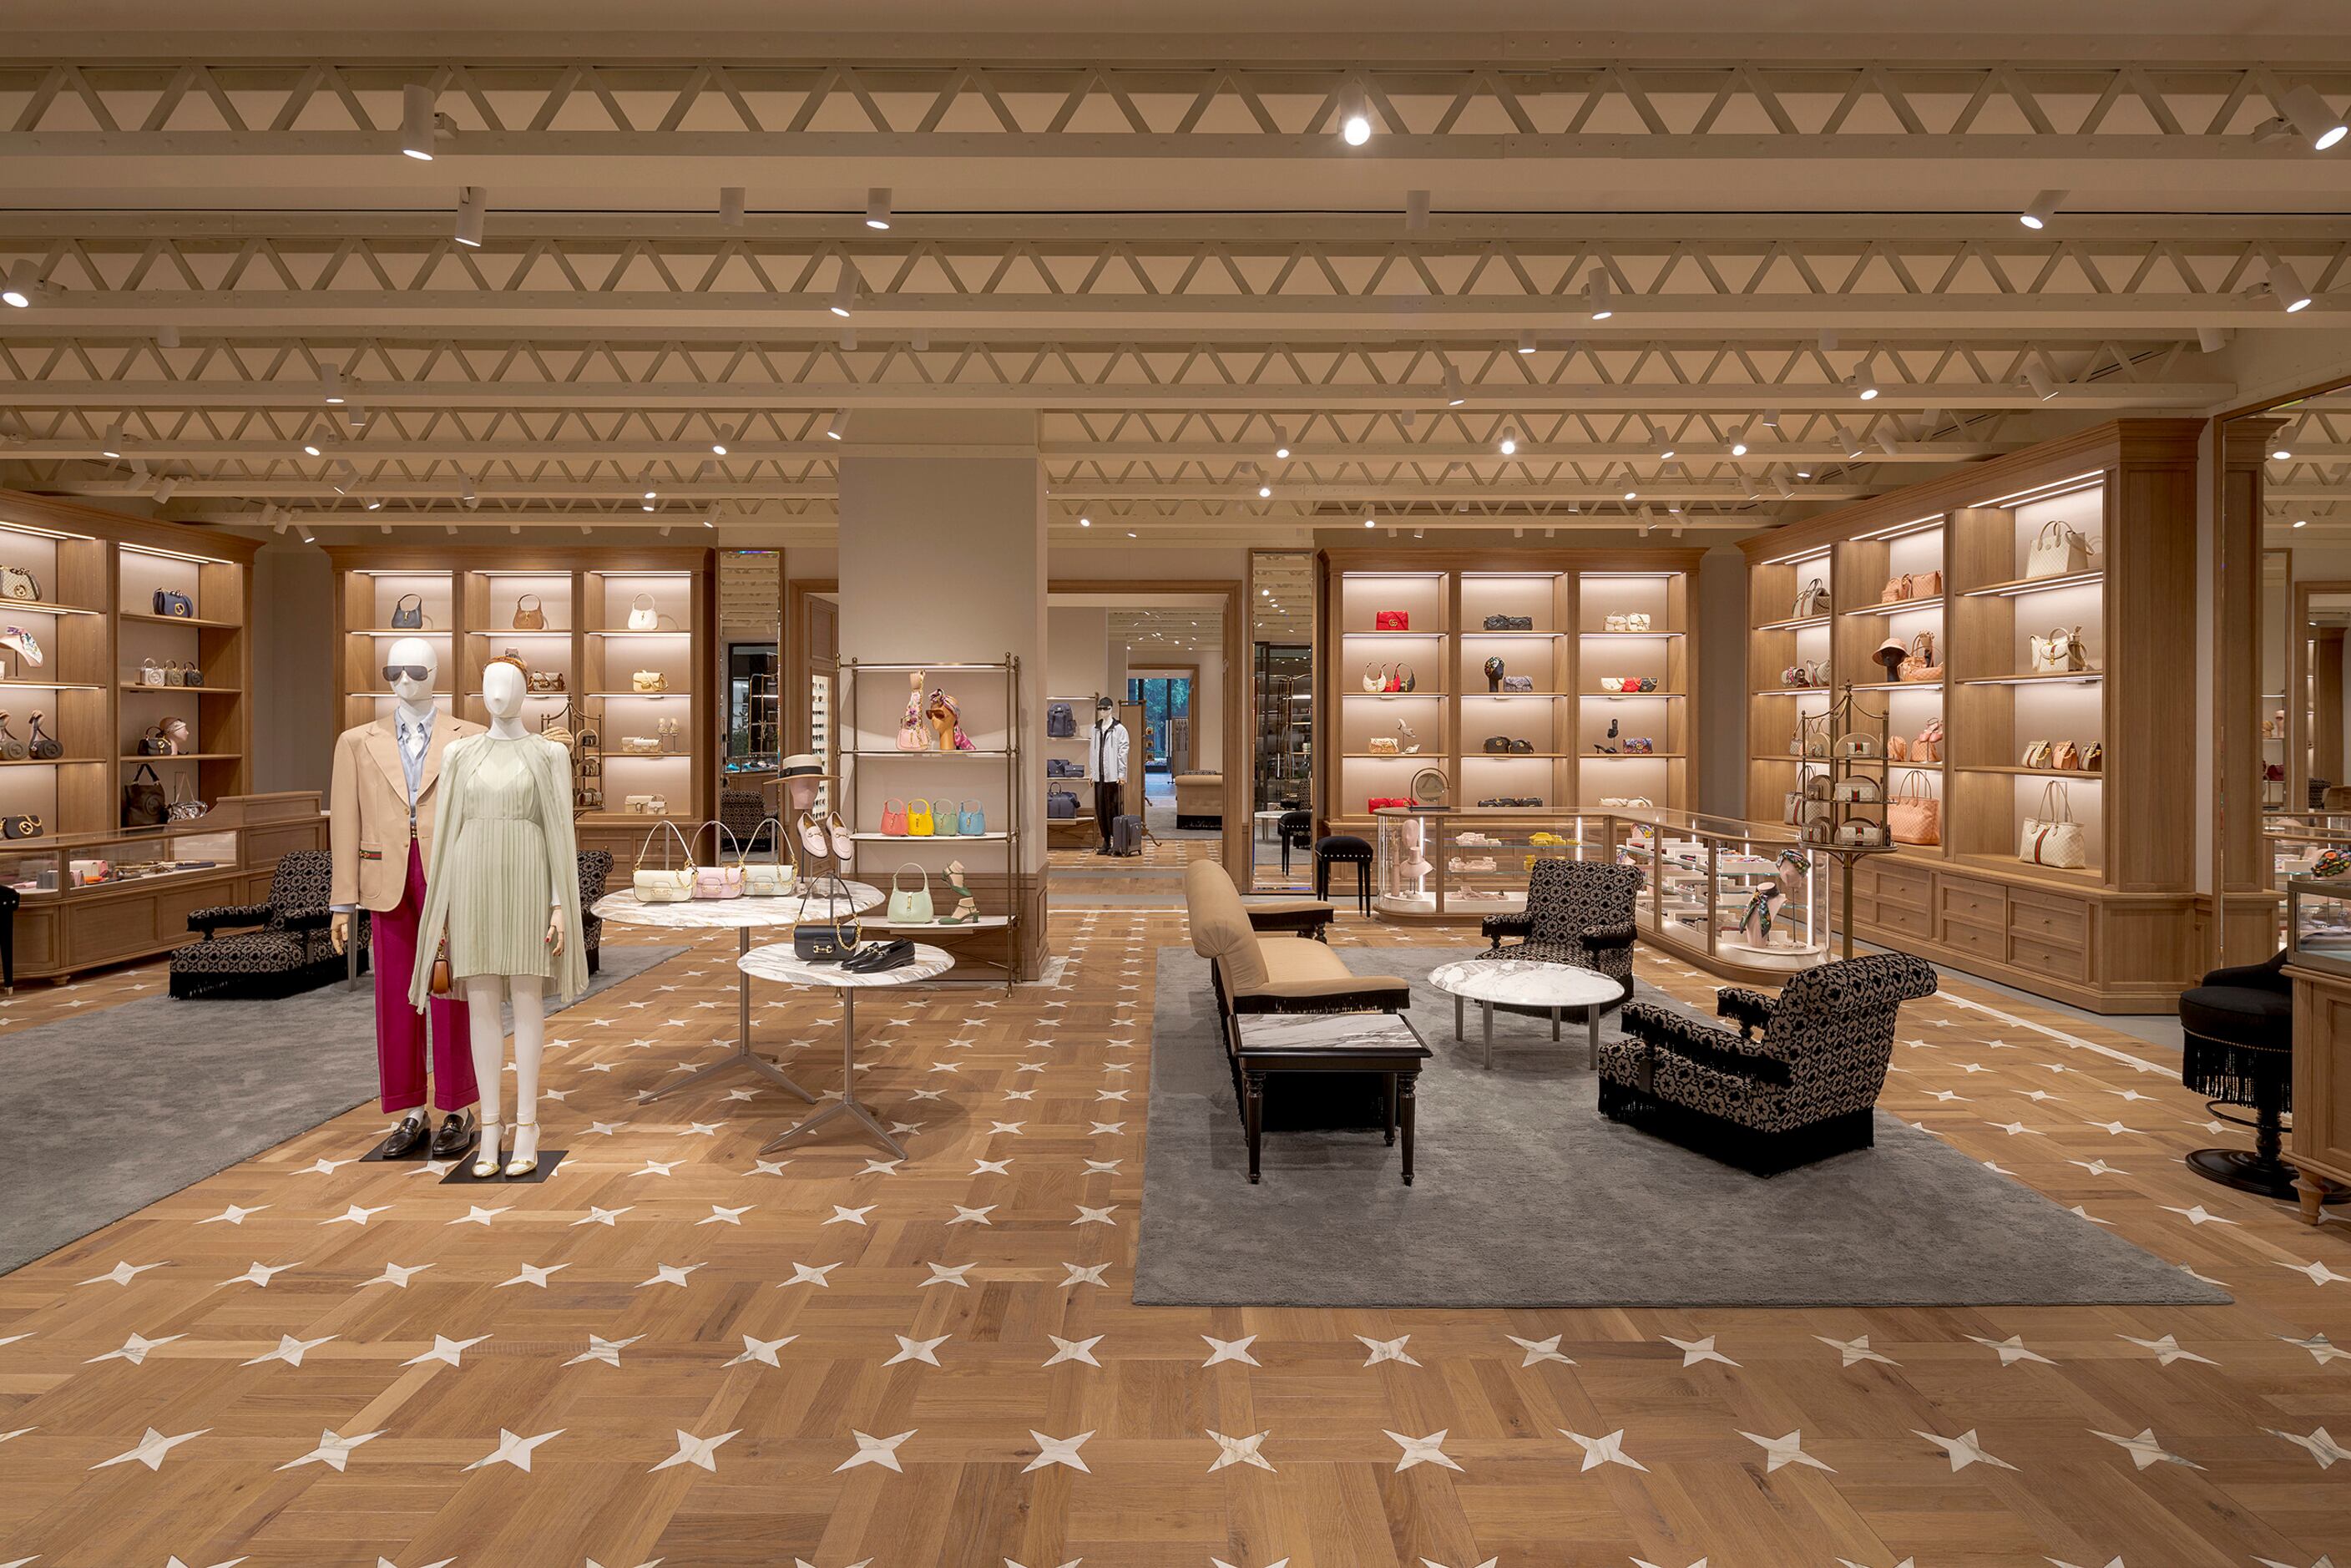 Saint Louis Galleria on X: Louis Vuitton, Gucci, Prada, and more